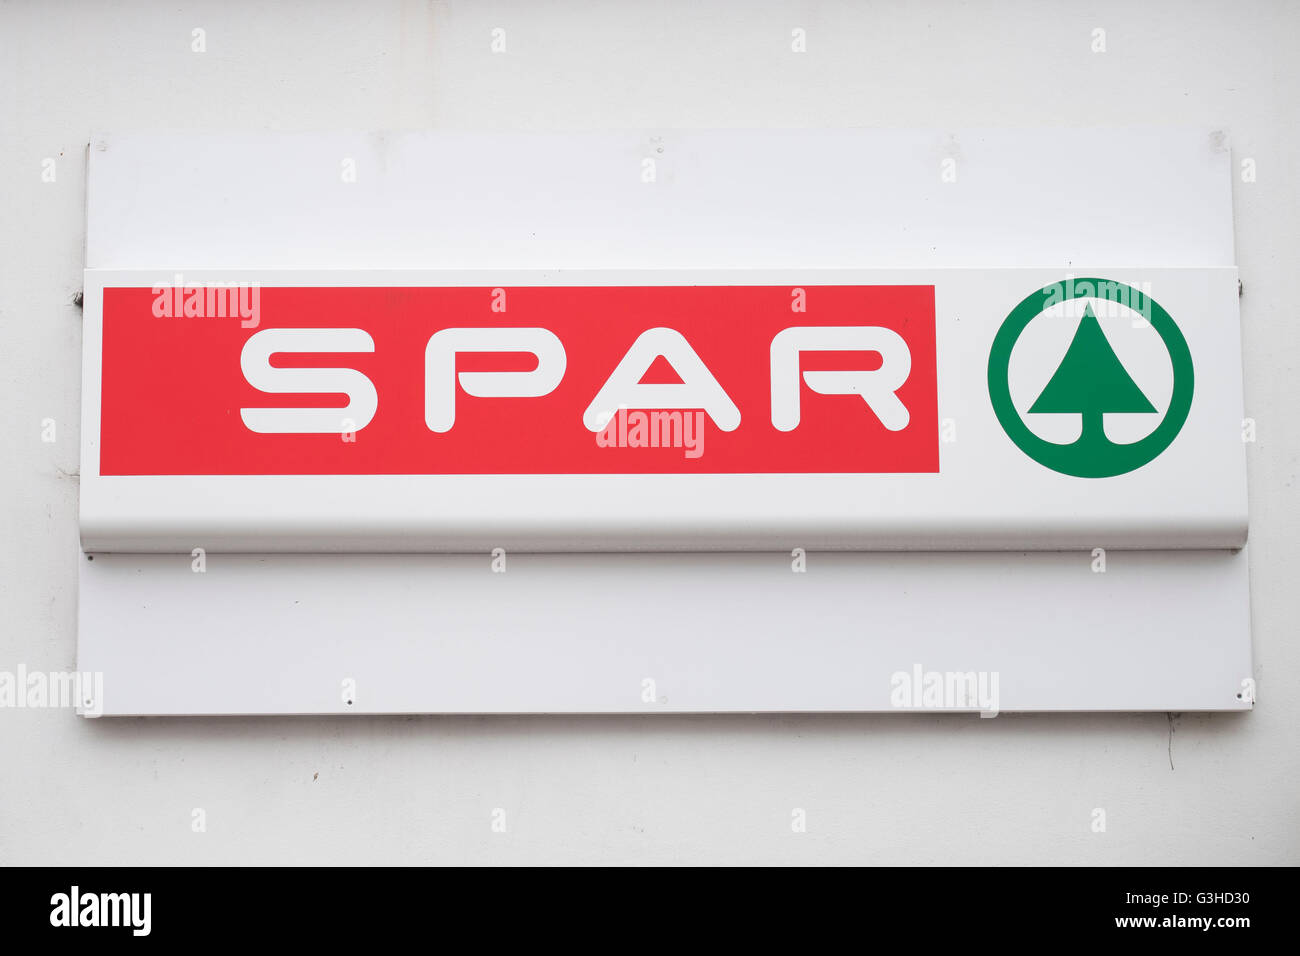 Spar convenience store shop sign logo. Stock Photo